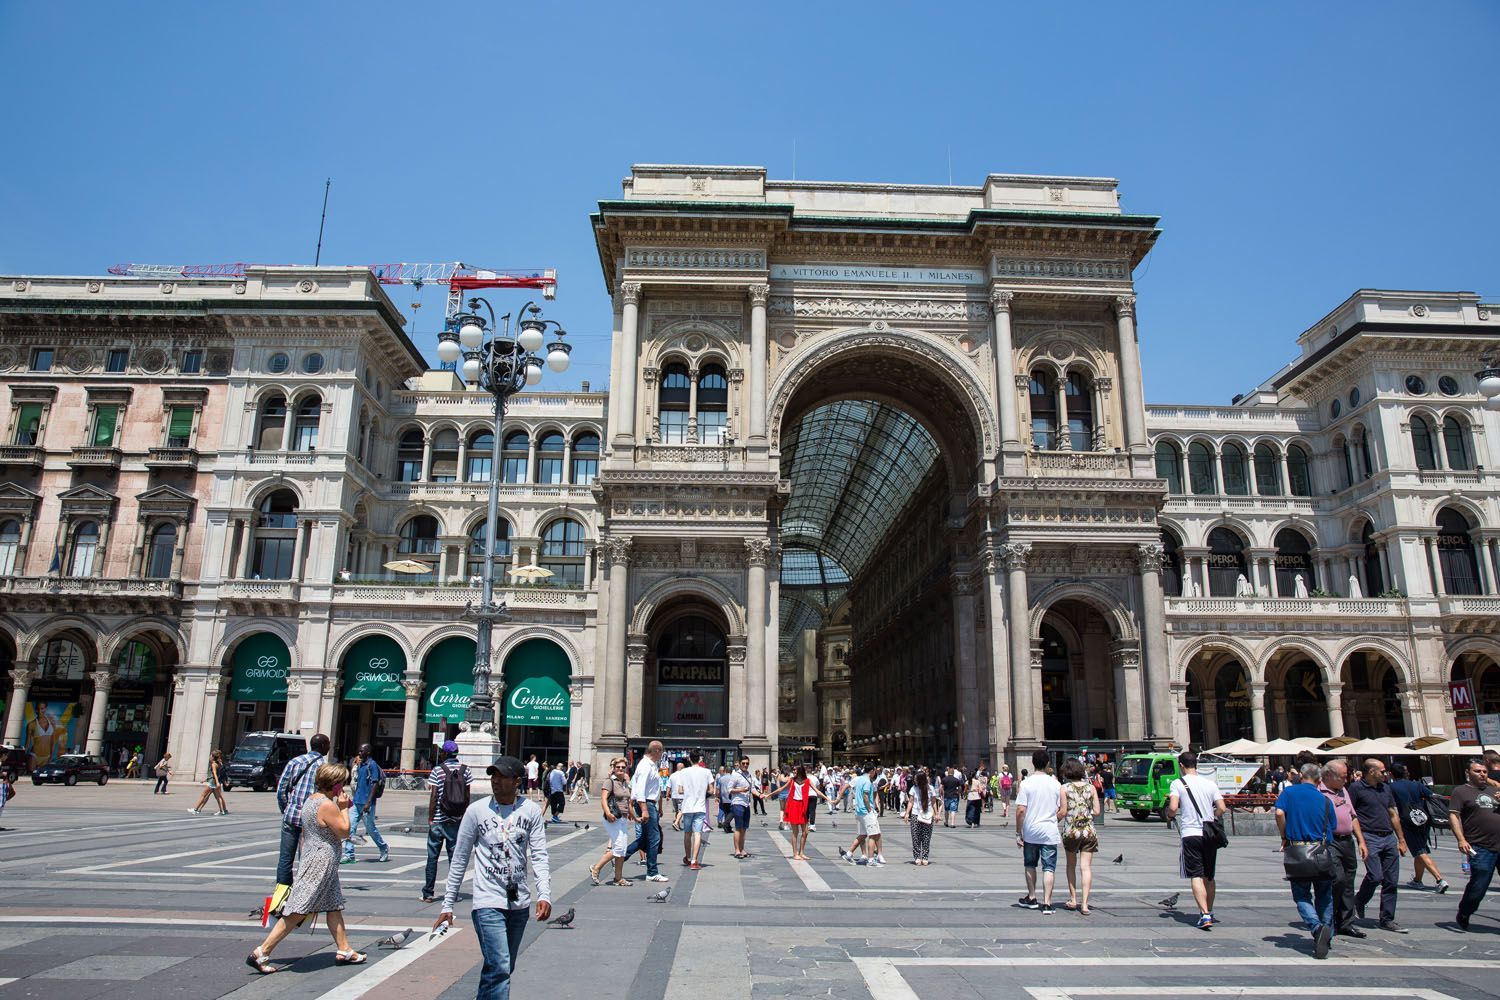 Galleria day trip to Milan | Milan Day Trip